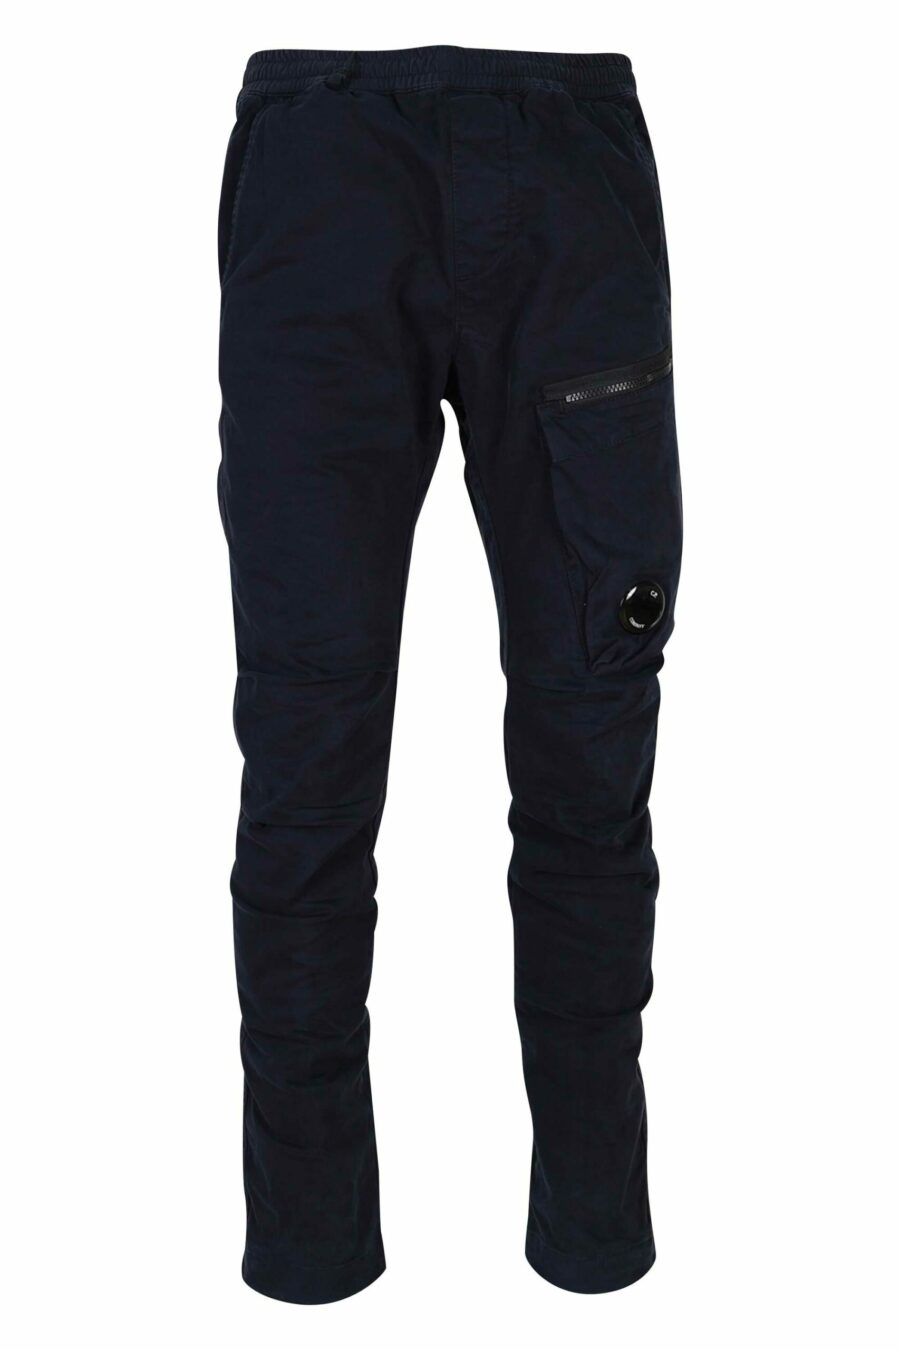 Pantalón azul oscuro de satén elástico con bolsillo lateral y logo lente - 7620943578485 1 scaled